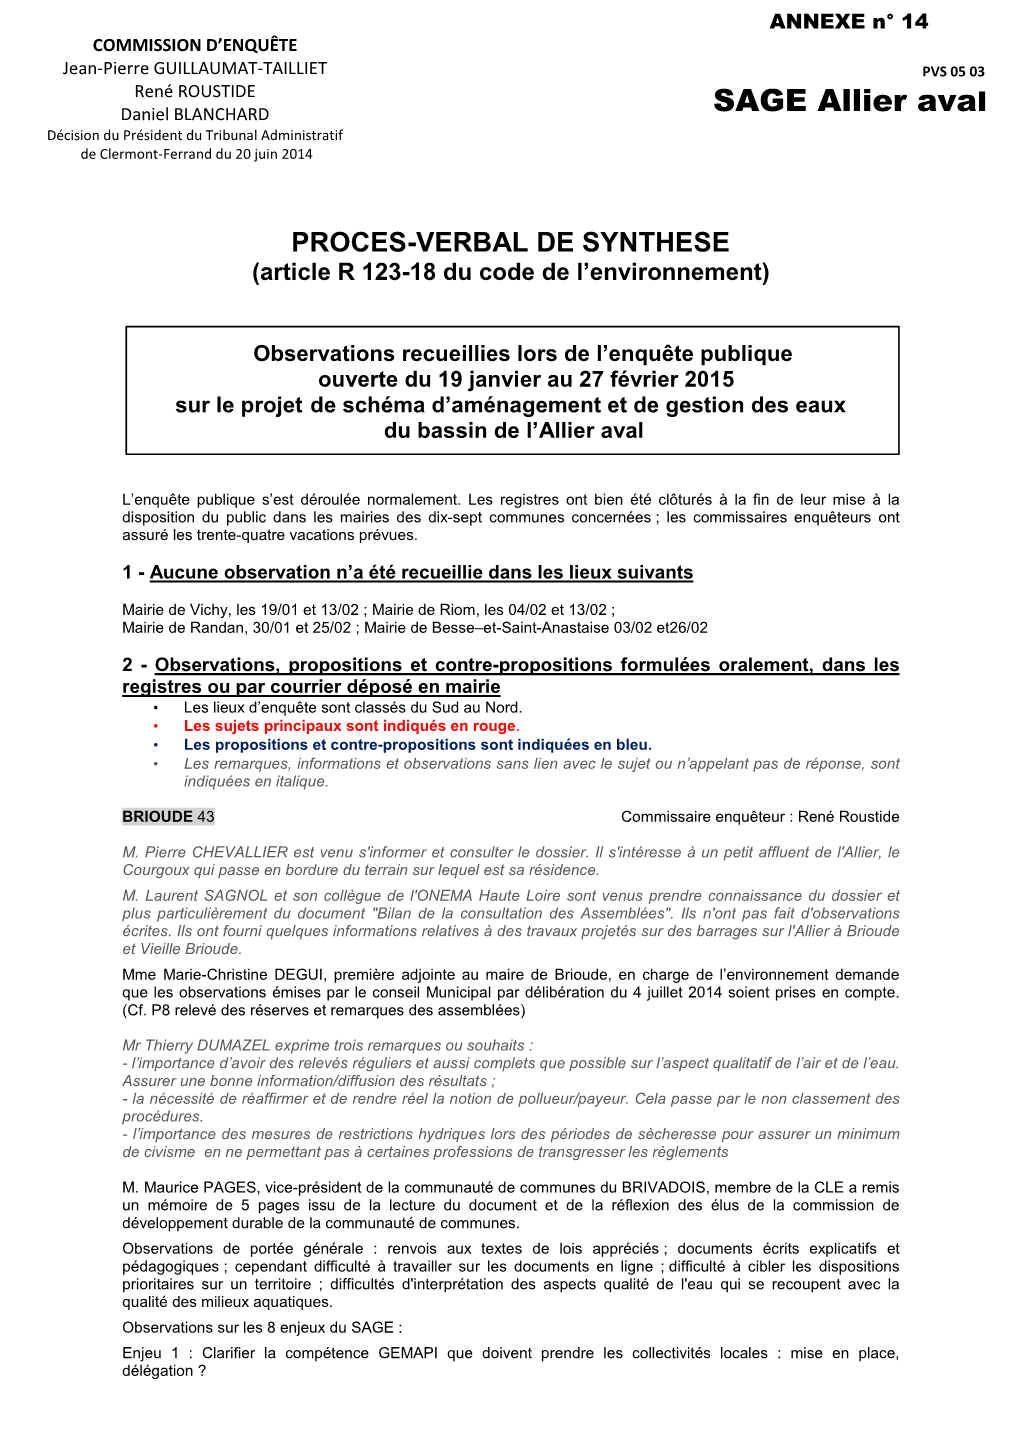 SAGE Allier Aval Daniel BLANCHARD Décision Du Président Du Tribunal Administratif De Clermont-Ferrand Du 20 Juin 2014